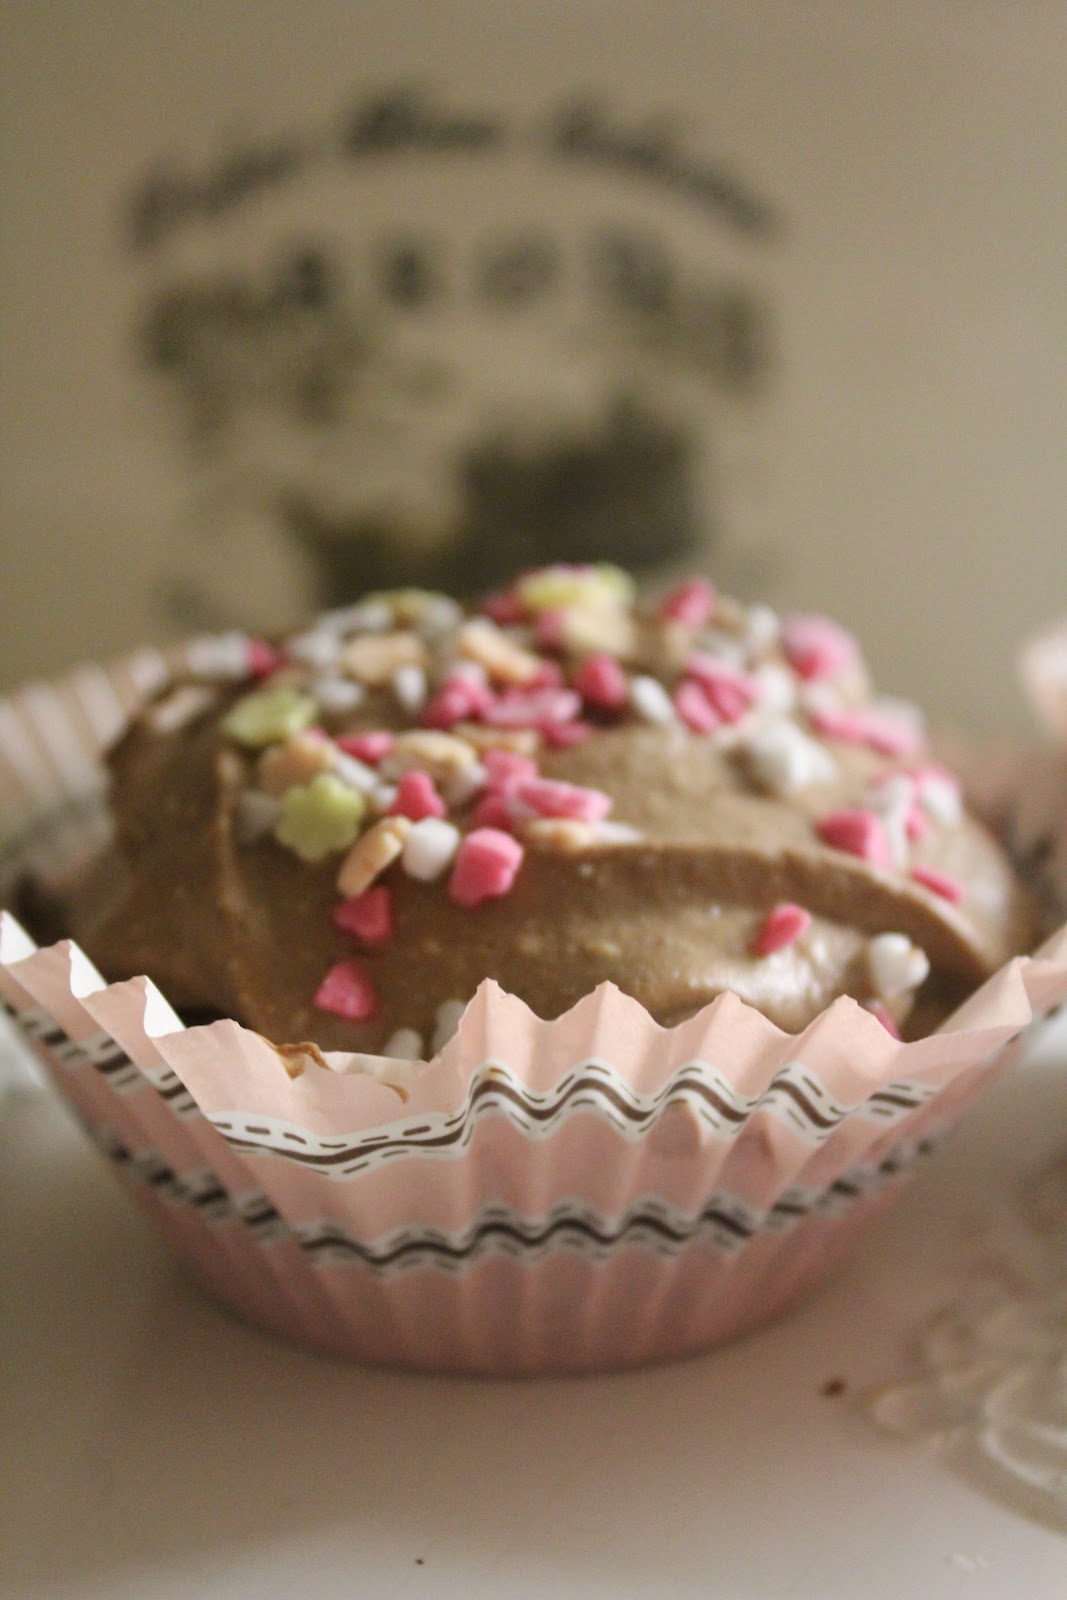 mammas bakeri: Glutenfri cupcakes med kakao og rørte rips